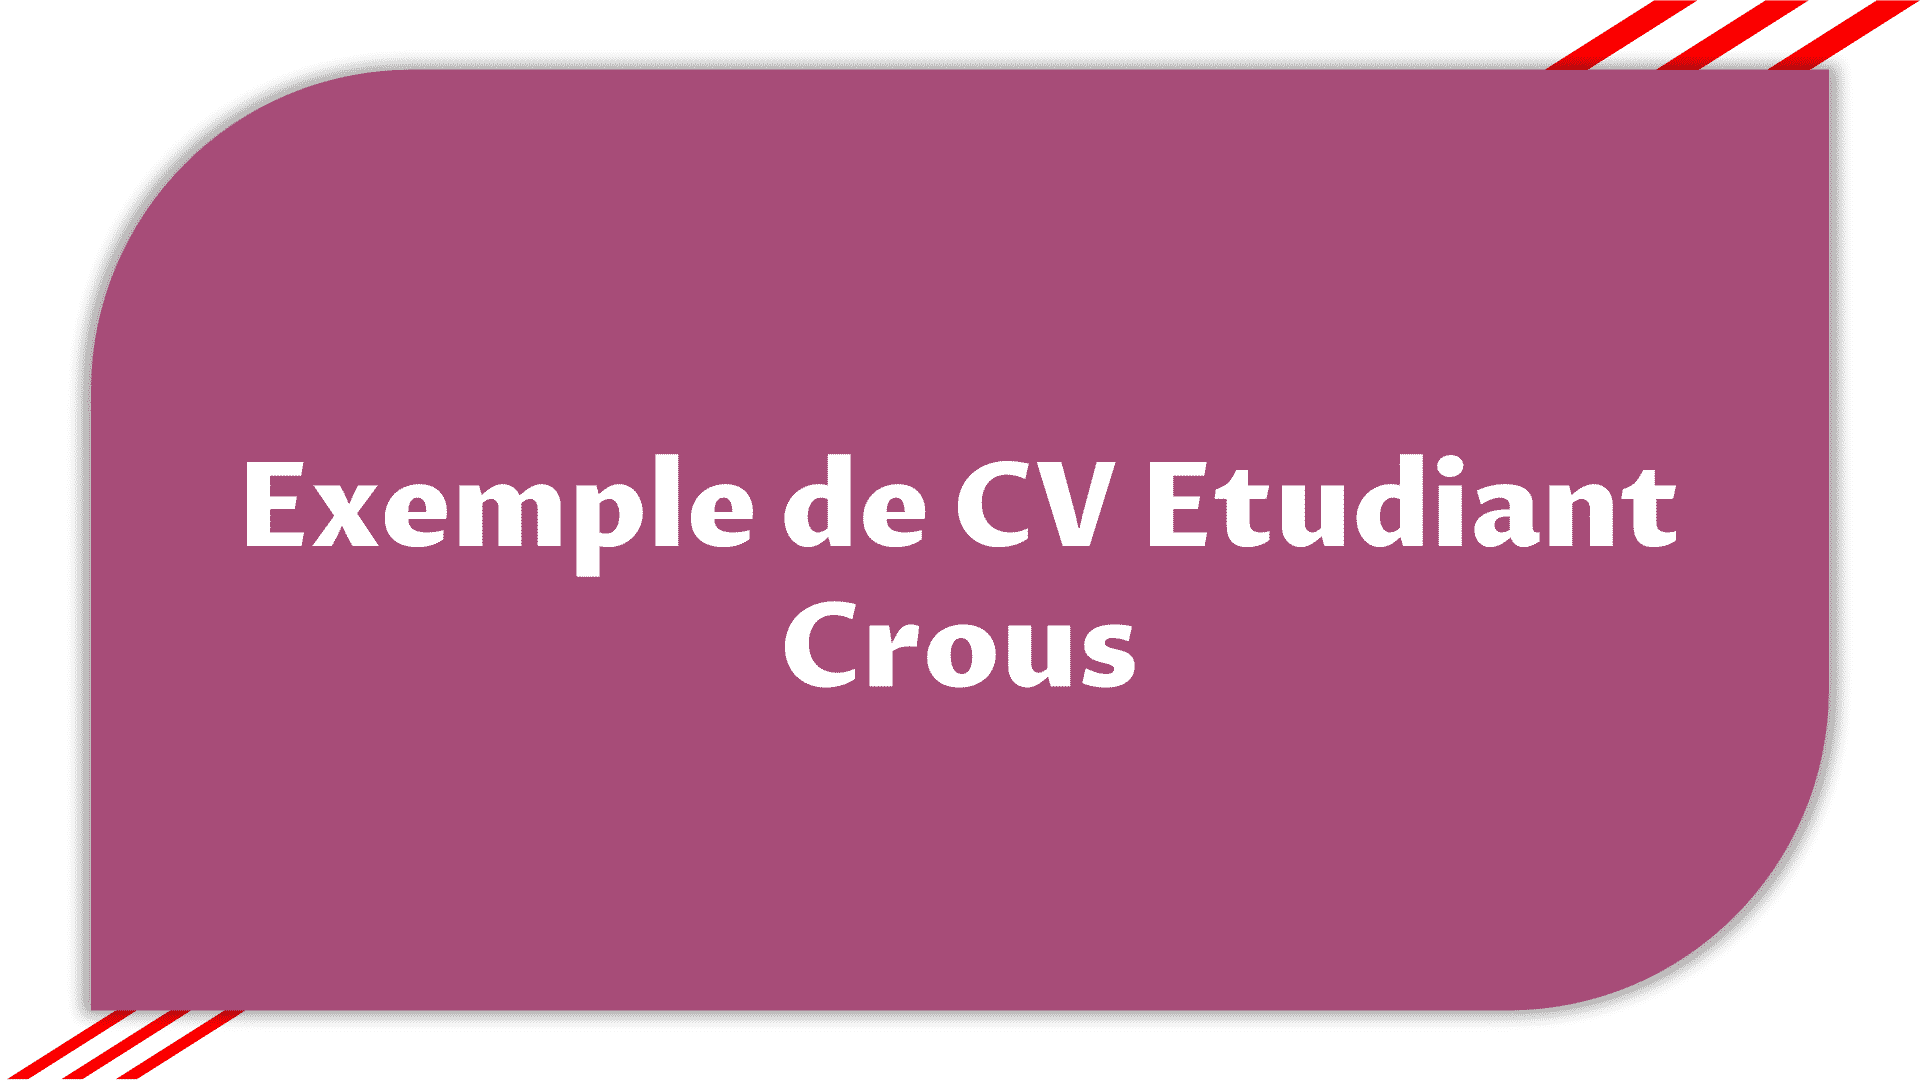 Exemple de CV Etudiant Crous > Etudier en France